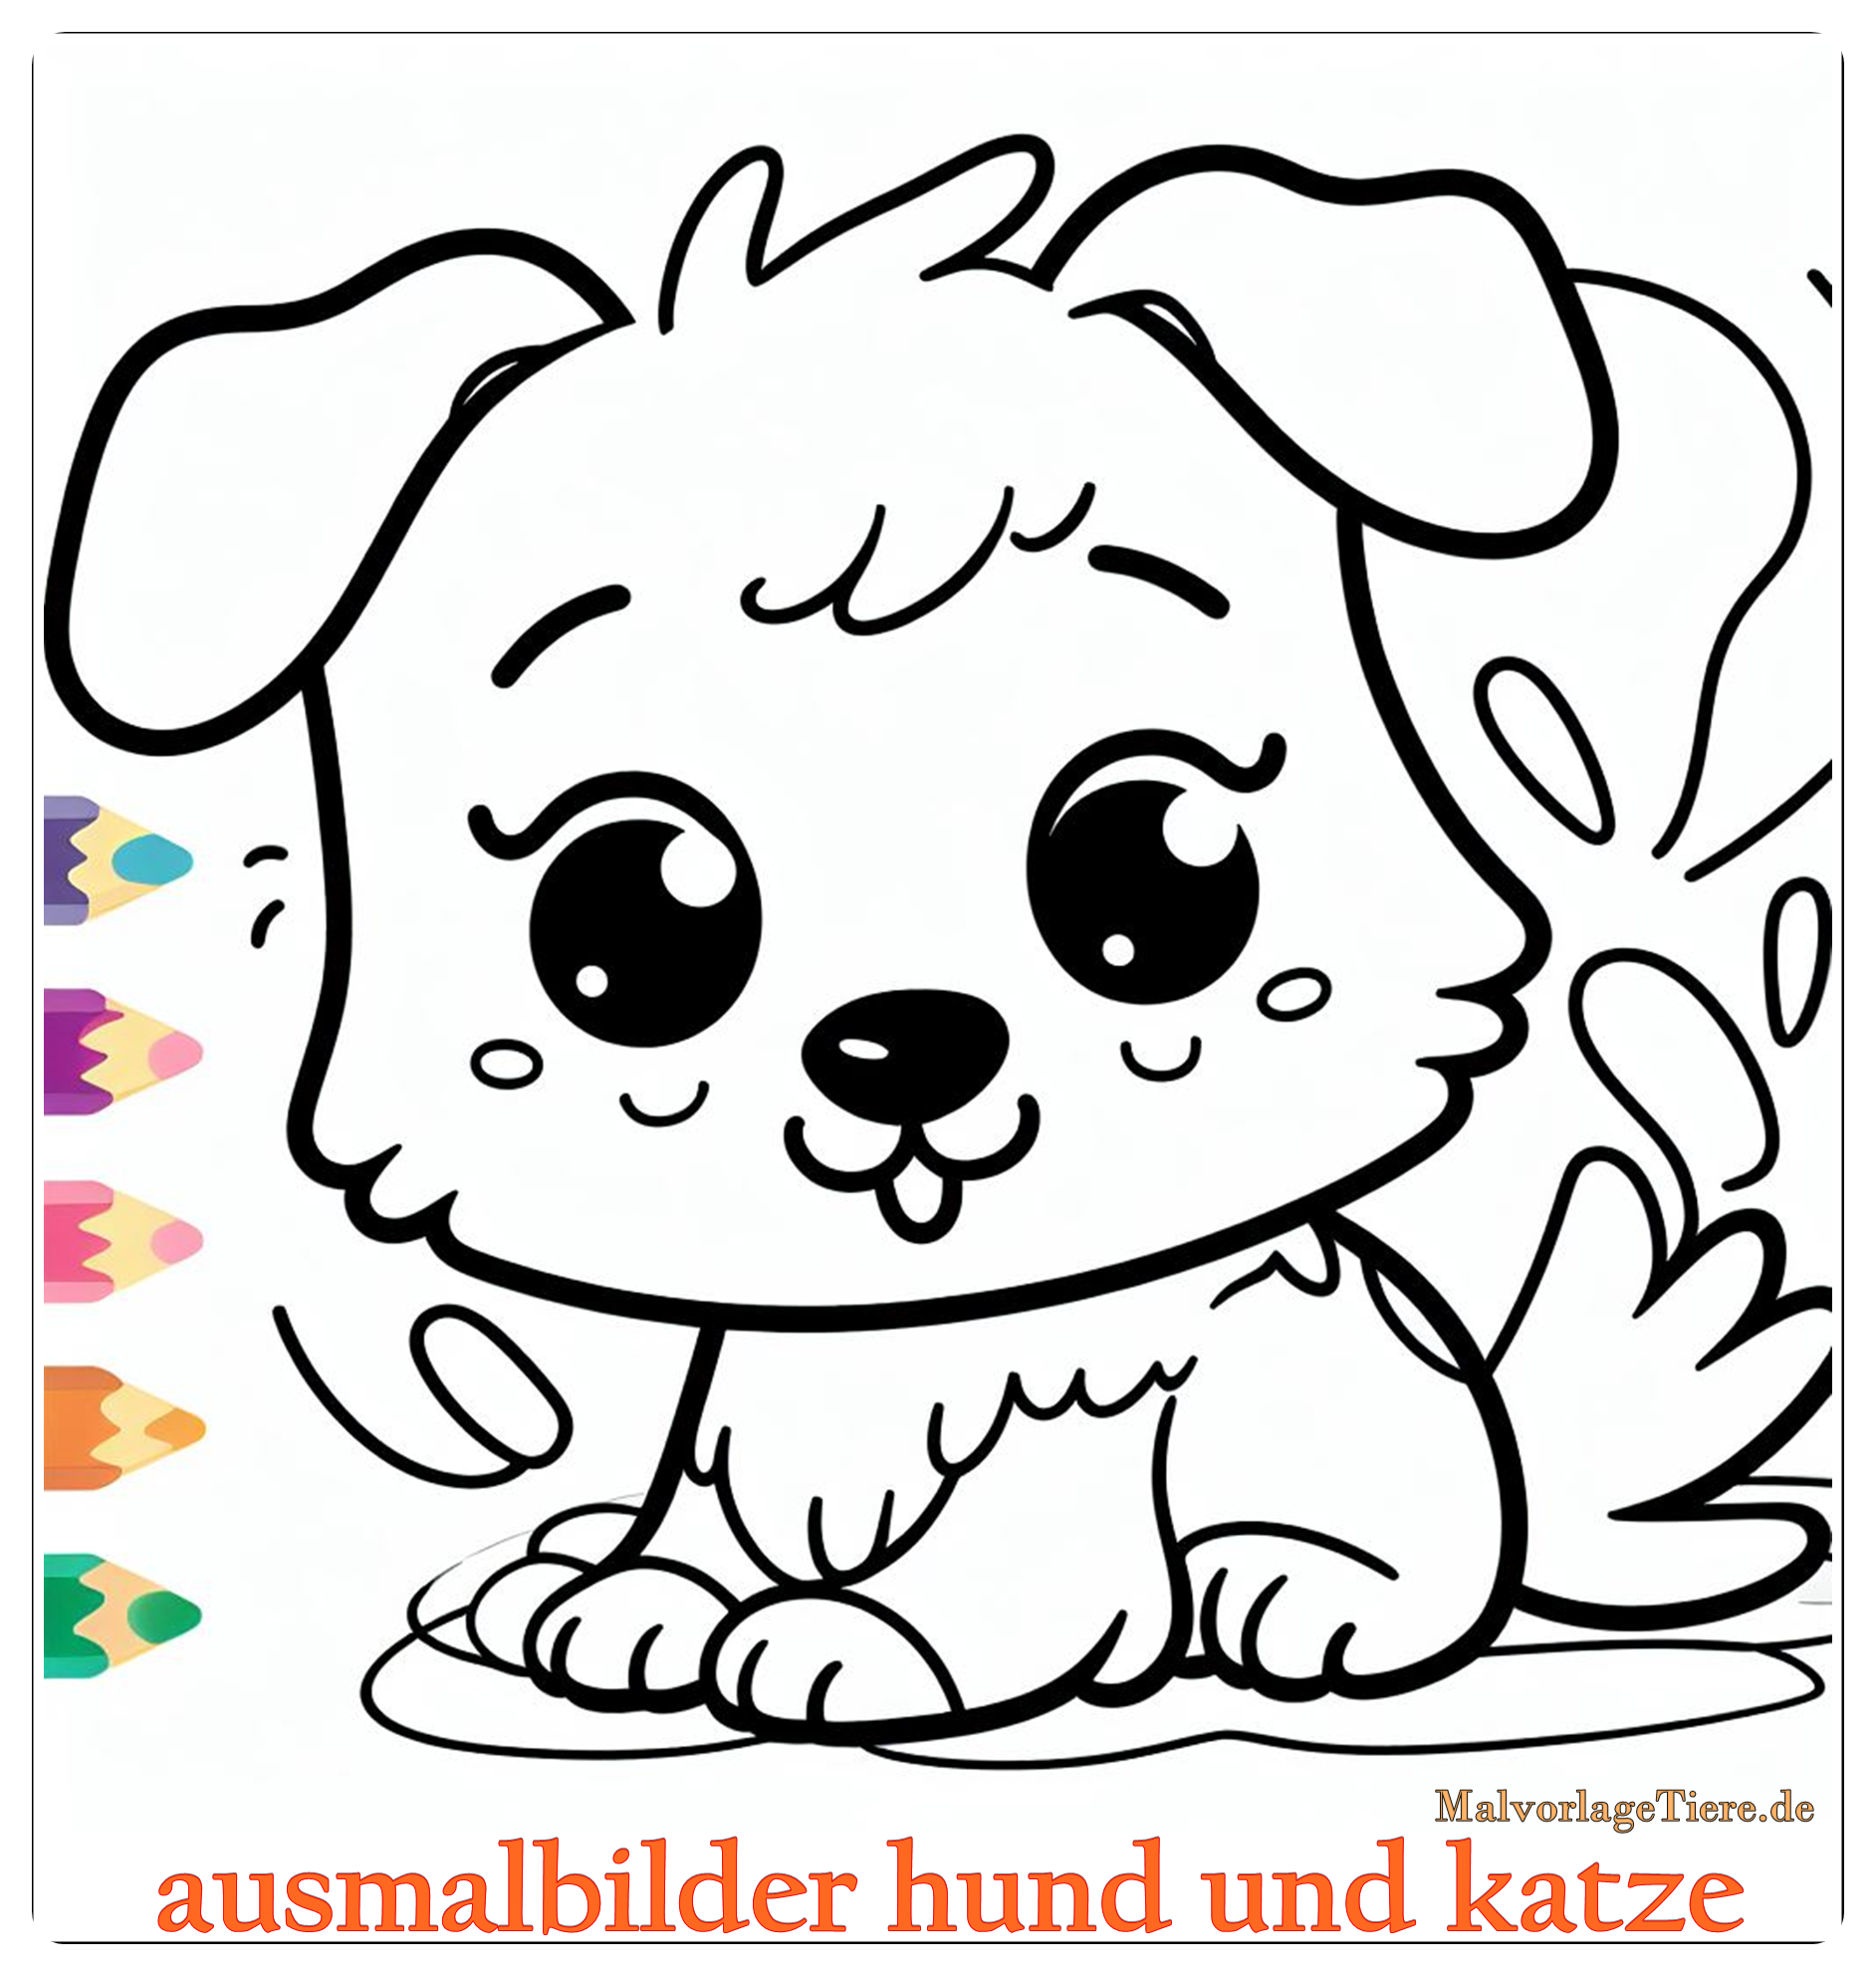 ausmalbilder hund und katze 09 by malvorlagetiere.de